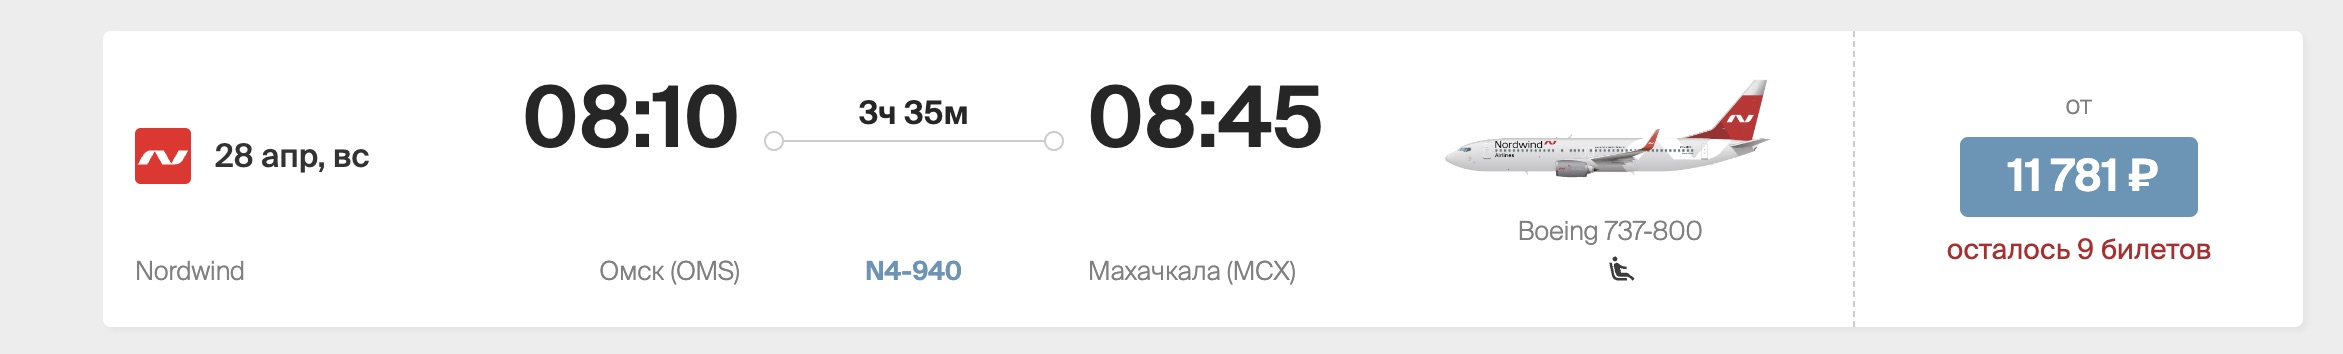 Из Омска вновь запустят прямые рейсы в Махачкалу #Новости #Общество #Омск